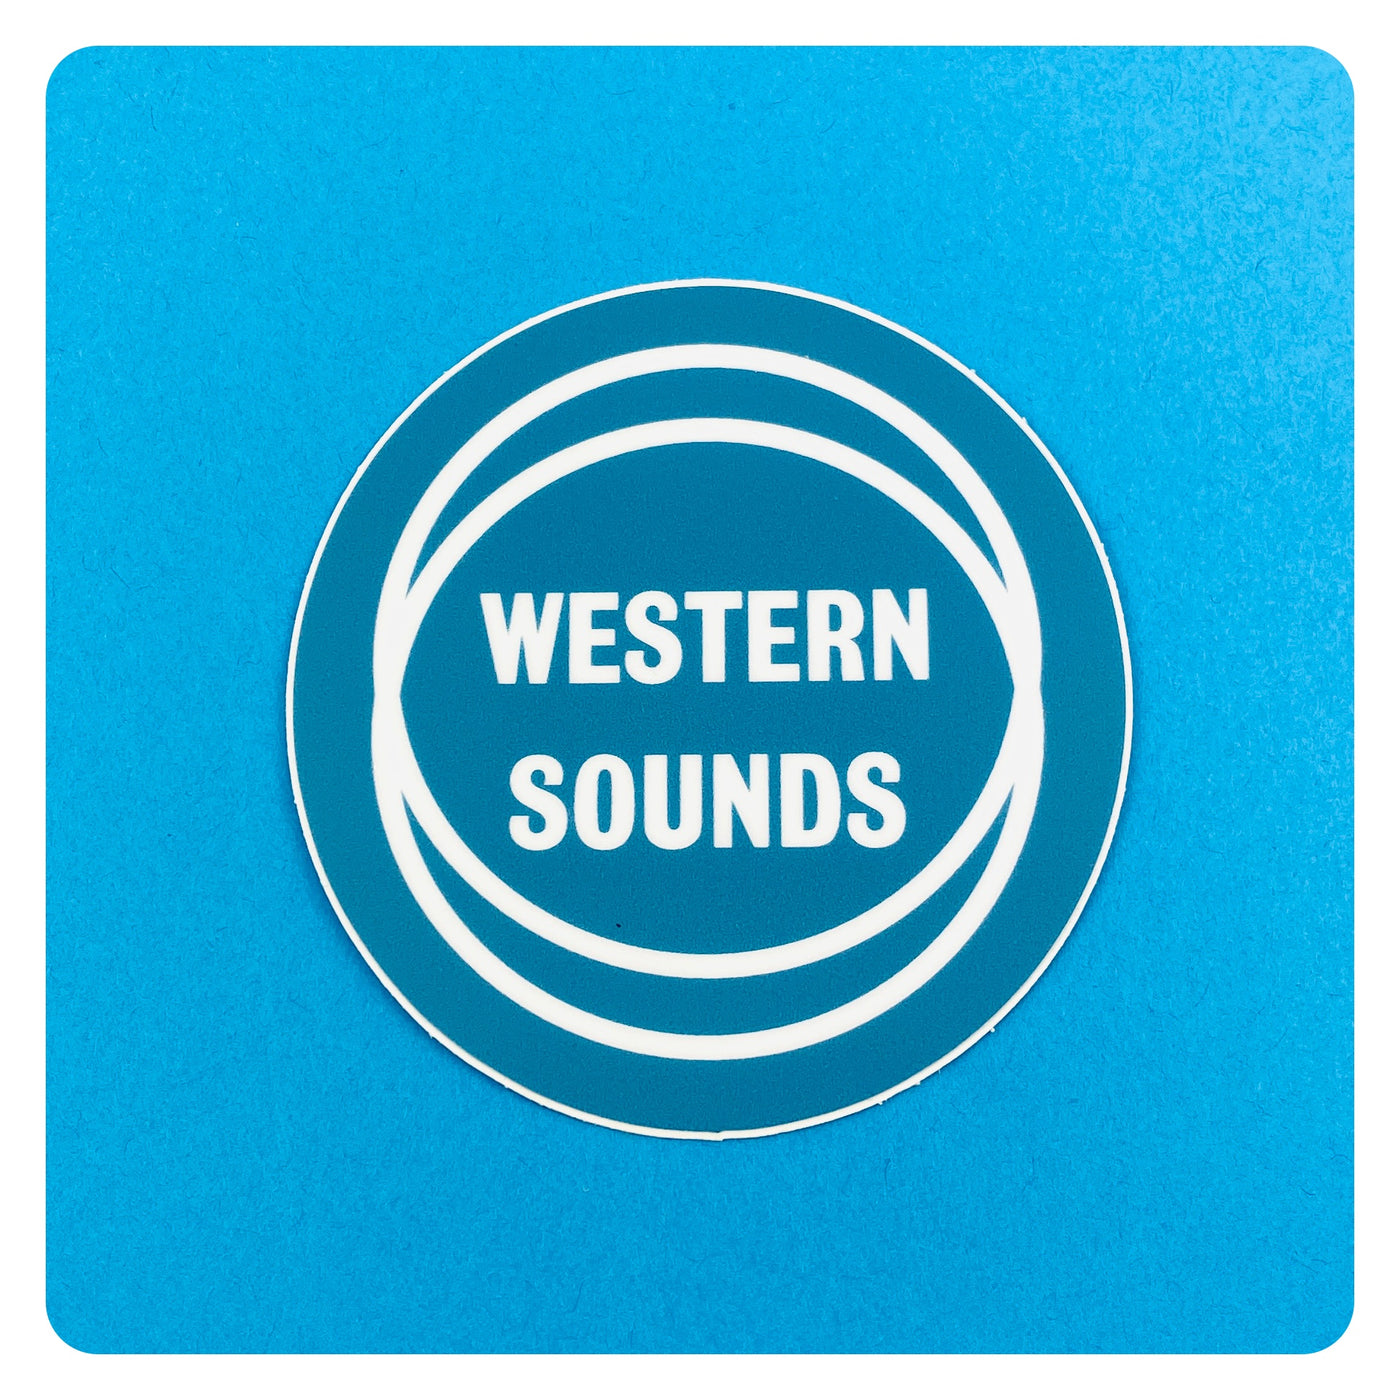 Western Sounds Vintage album art sticker